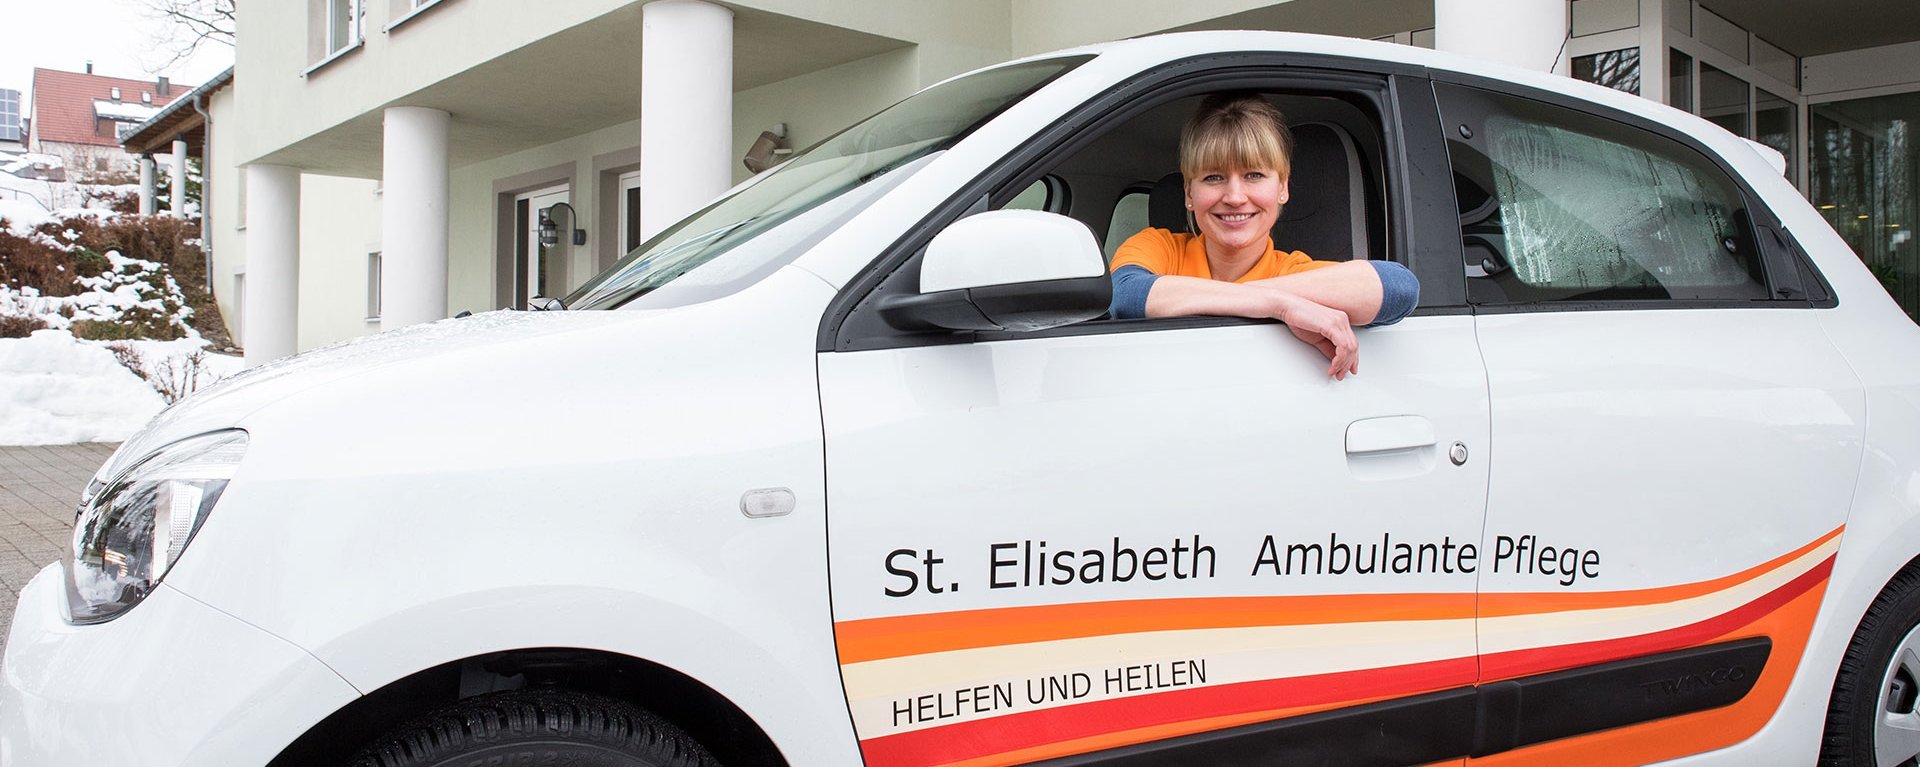 Eine junge Pflegerin in ihrem Auto mit der Aufschrift: "St. Elisabeth Ambulante Pflege - Heilen und Helfen"